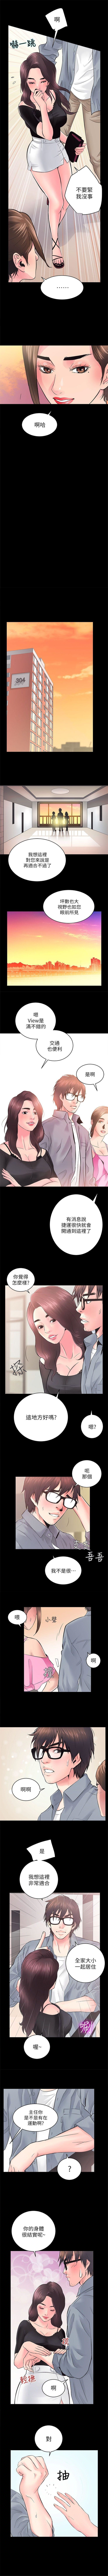 性溢房屋 1-20 中文翻译（应求更新中） page 38 full